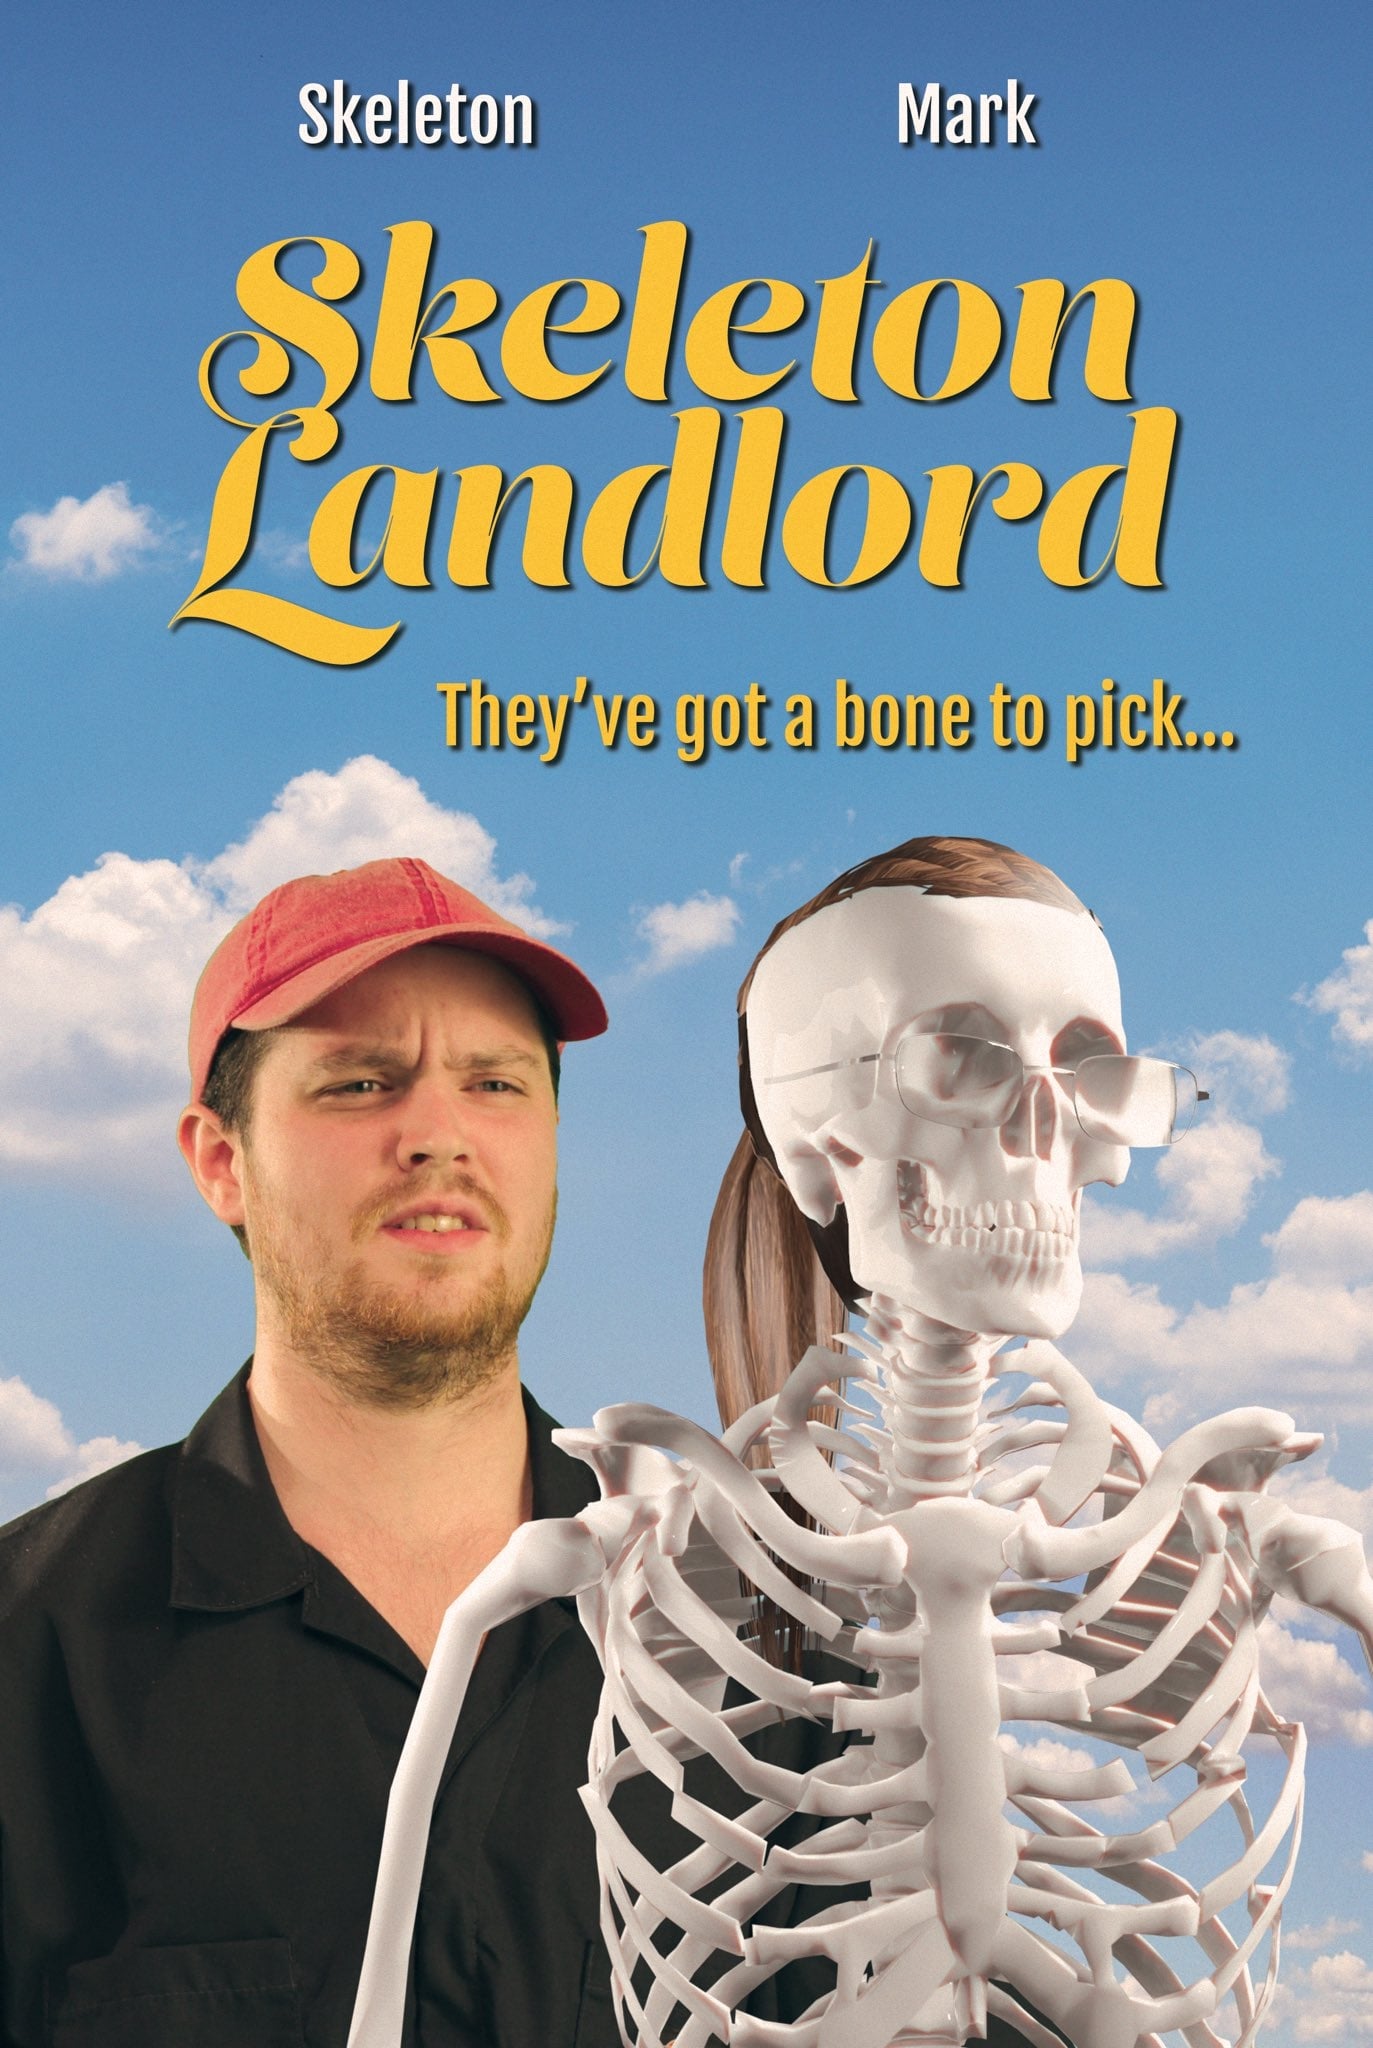 Skeleton Landlord